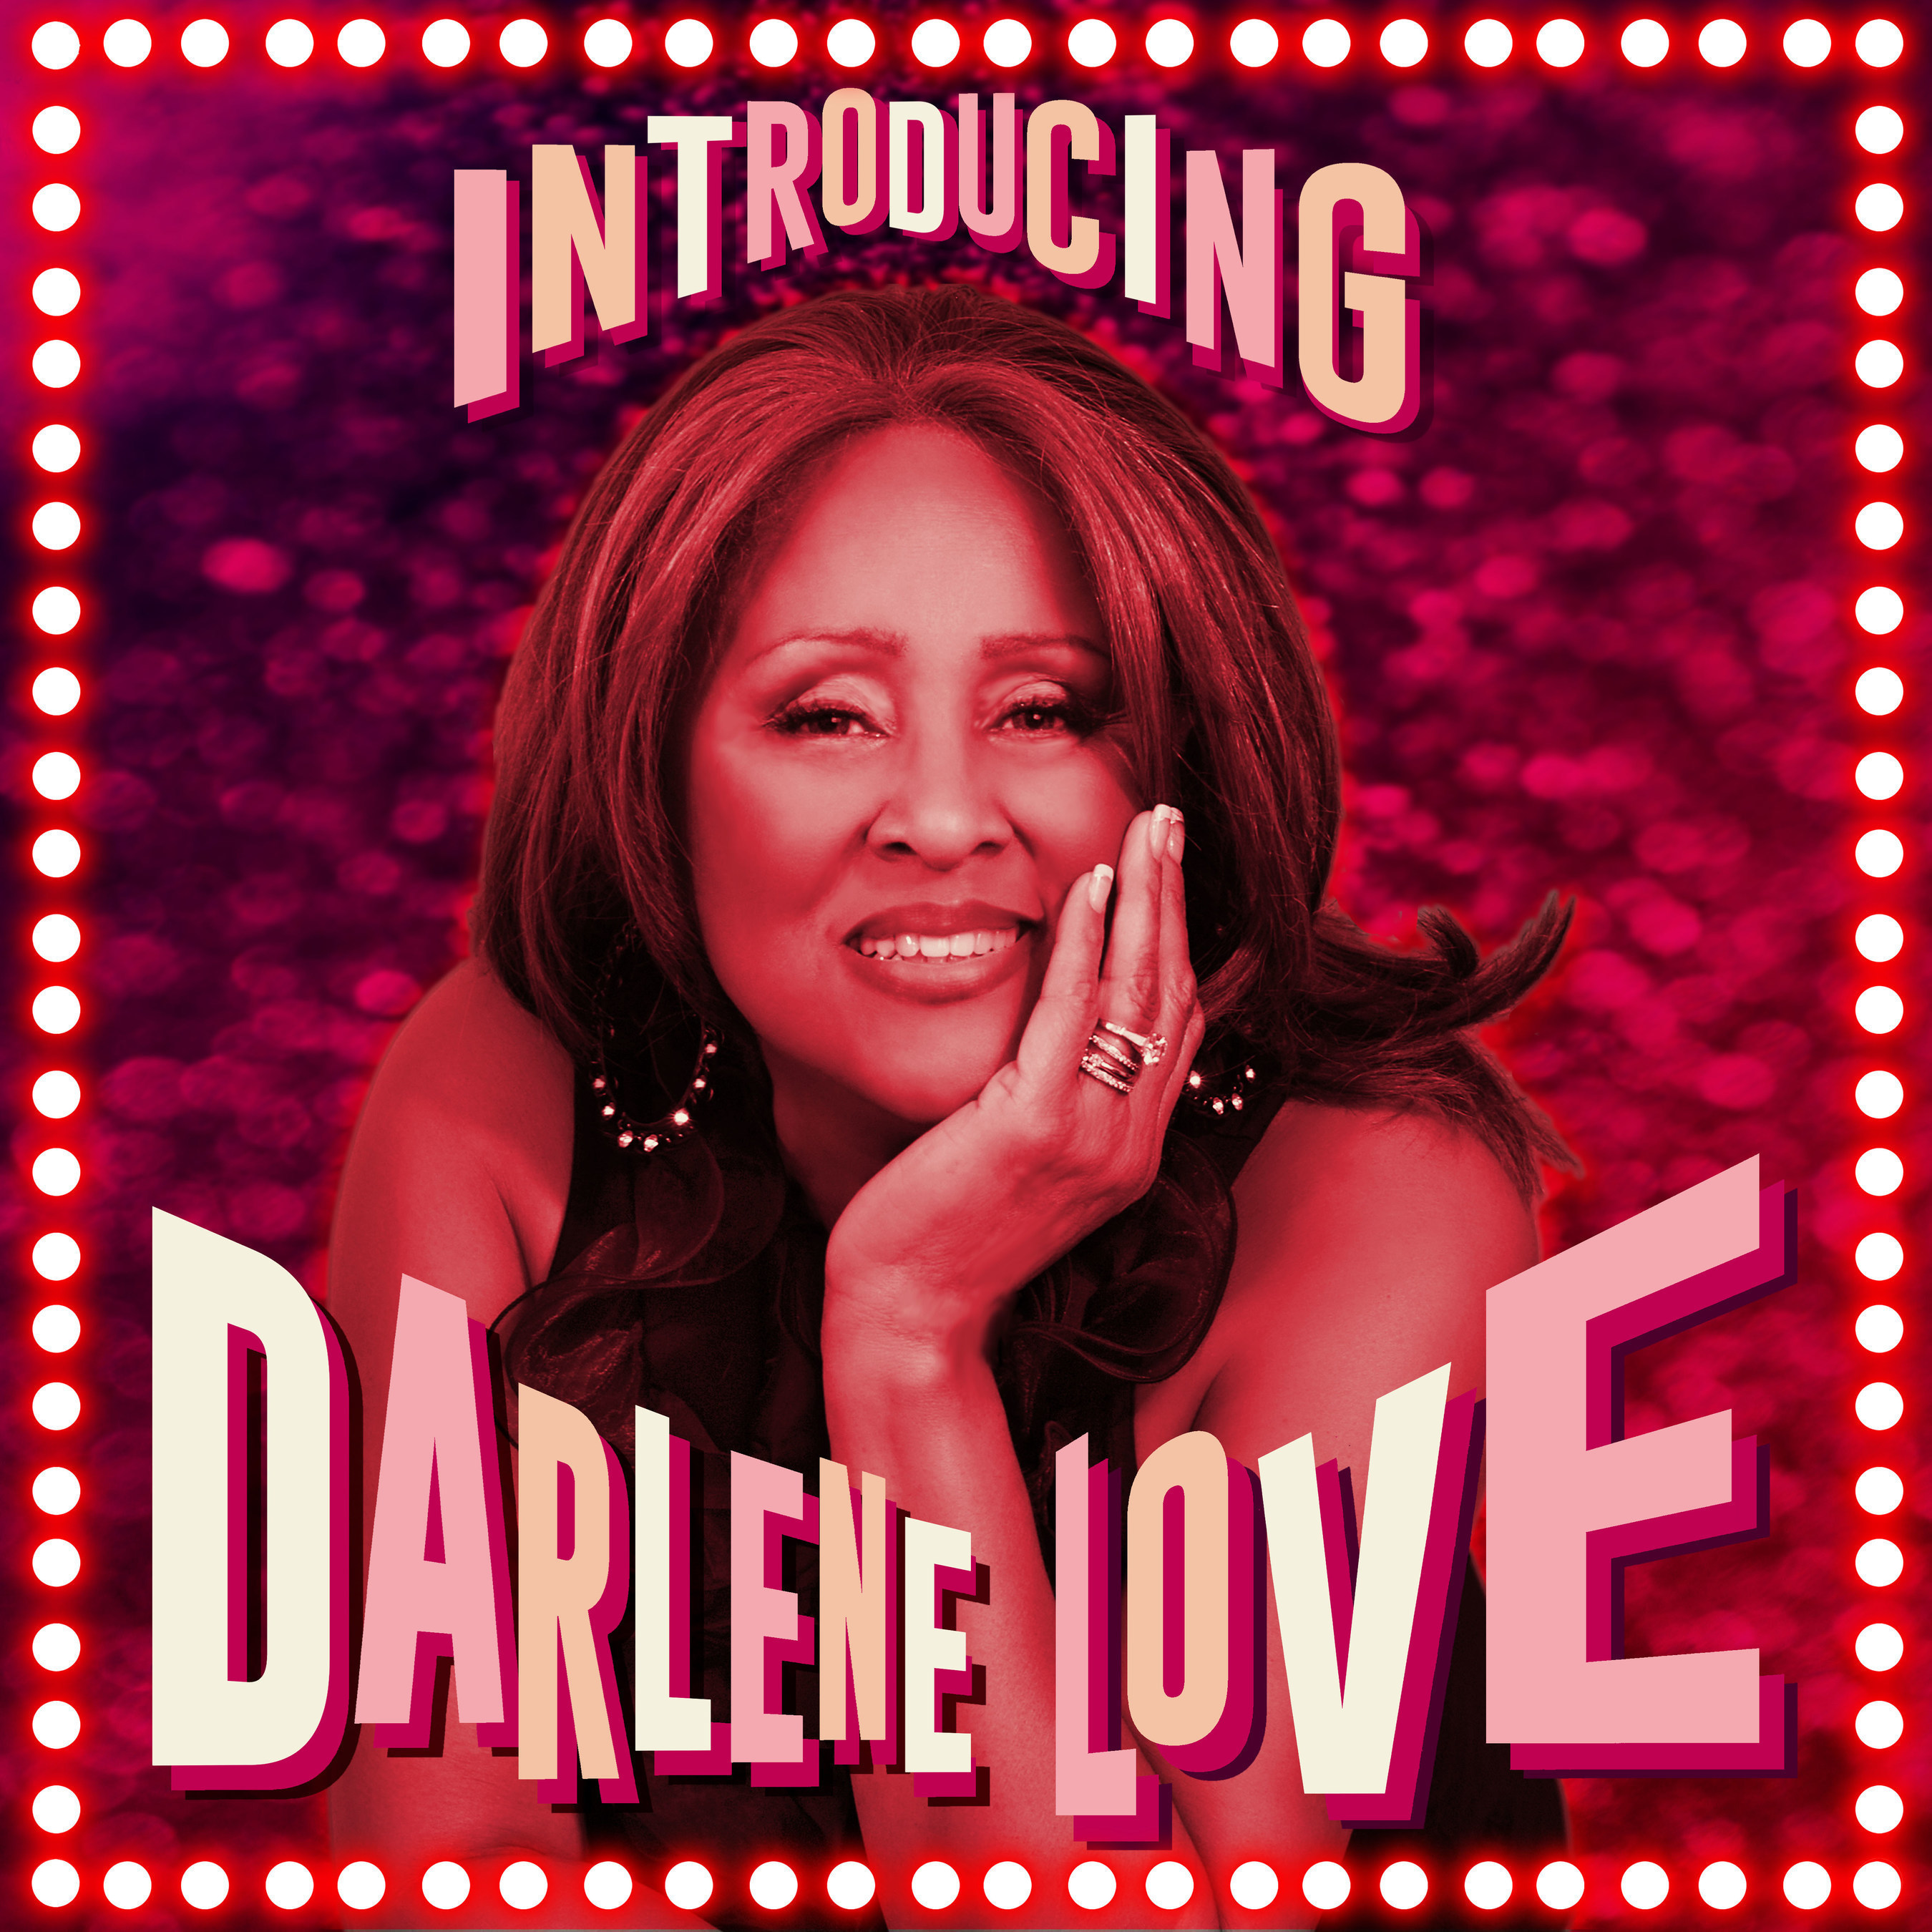 Long Awaited New Darlene Love Album 'Introducing Darlene Love' Available September 18